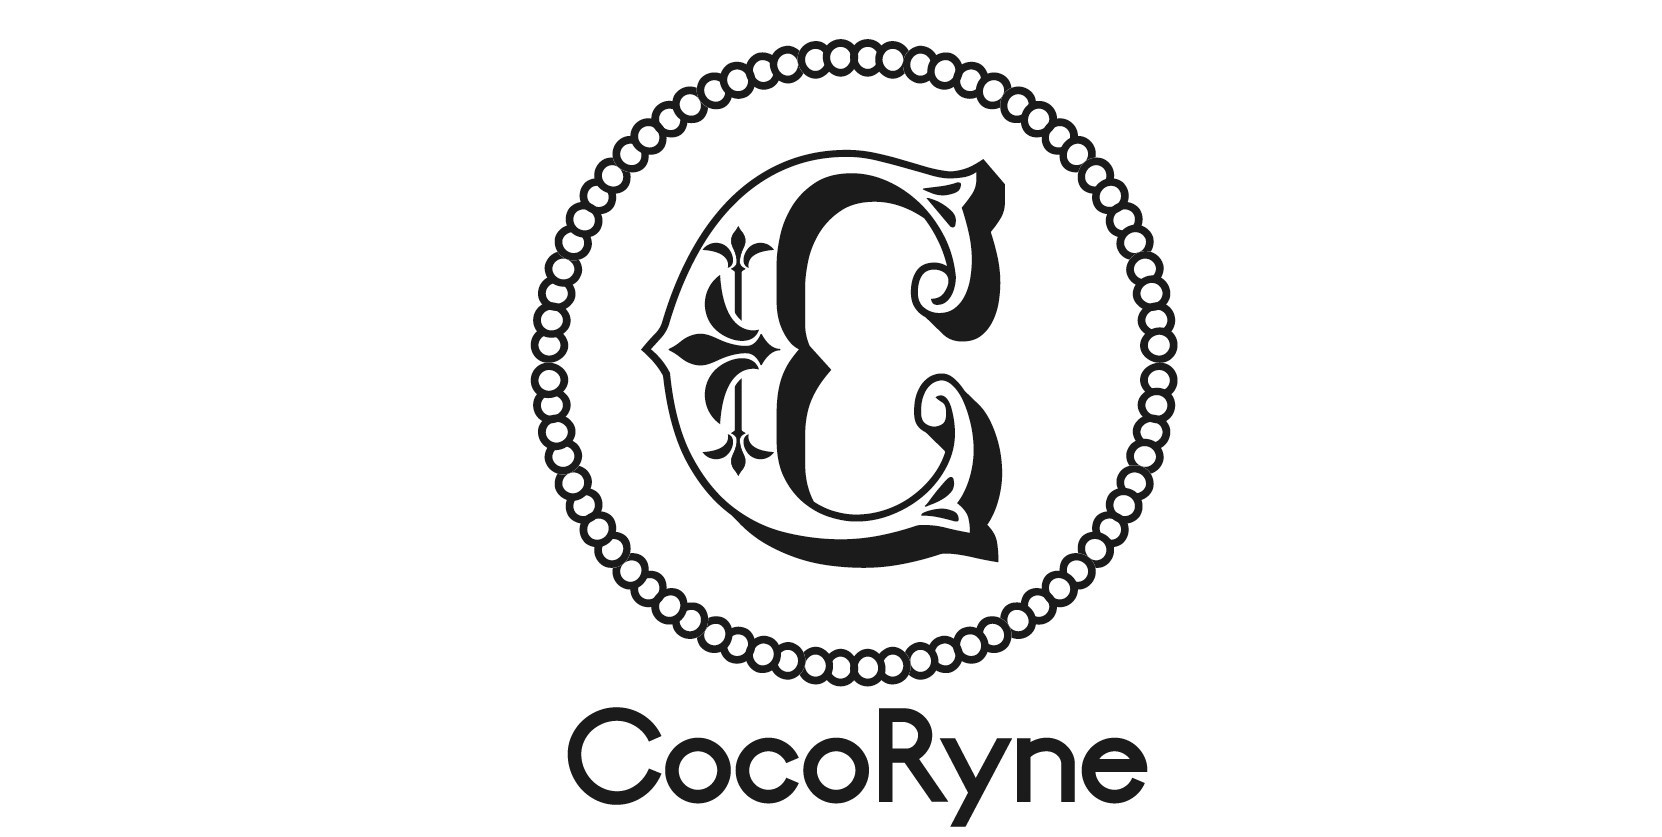 Cardo fabrica | CocoRyne